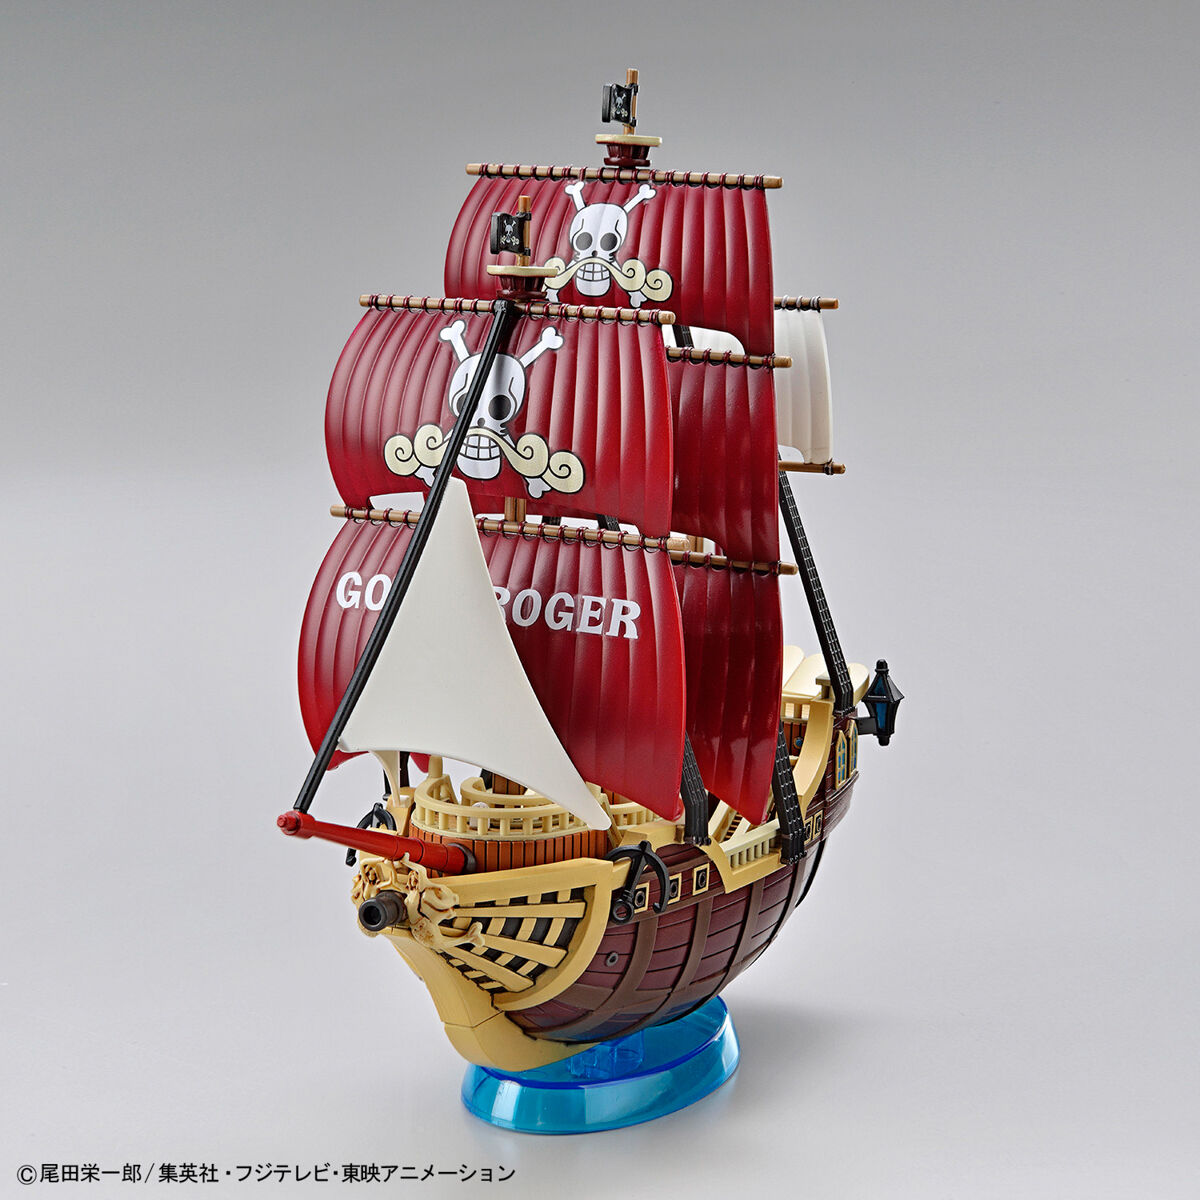 ワンピース偉大なる船(グランドシップ)コレクション オーロ・ジャクソン号 01